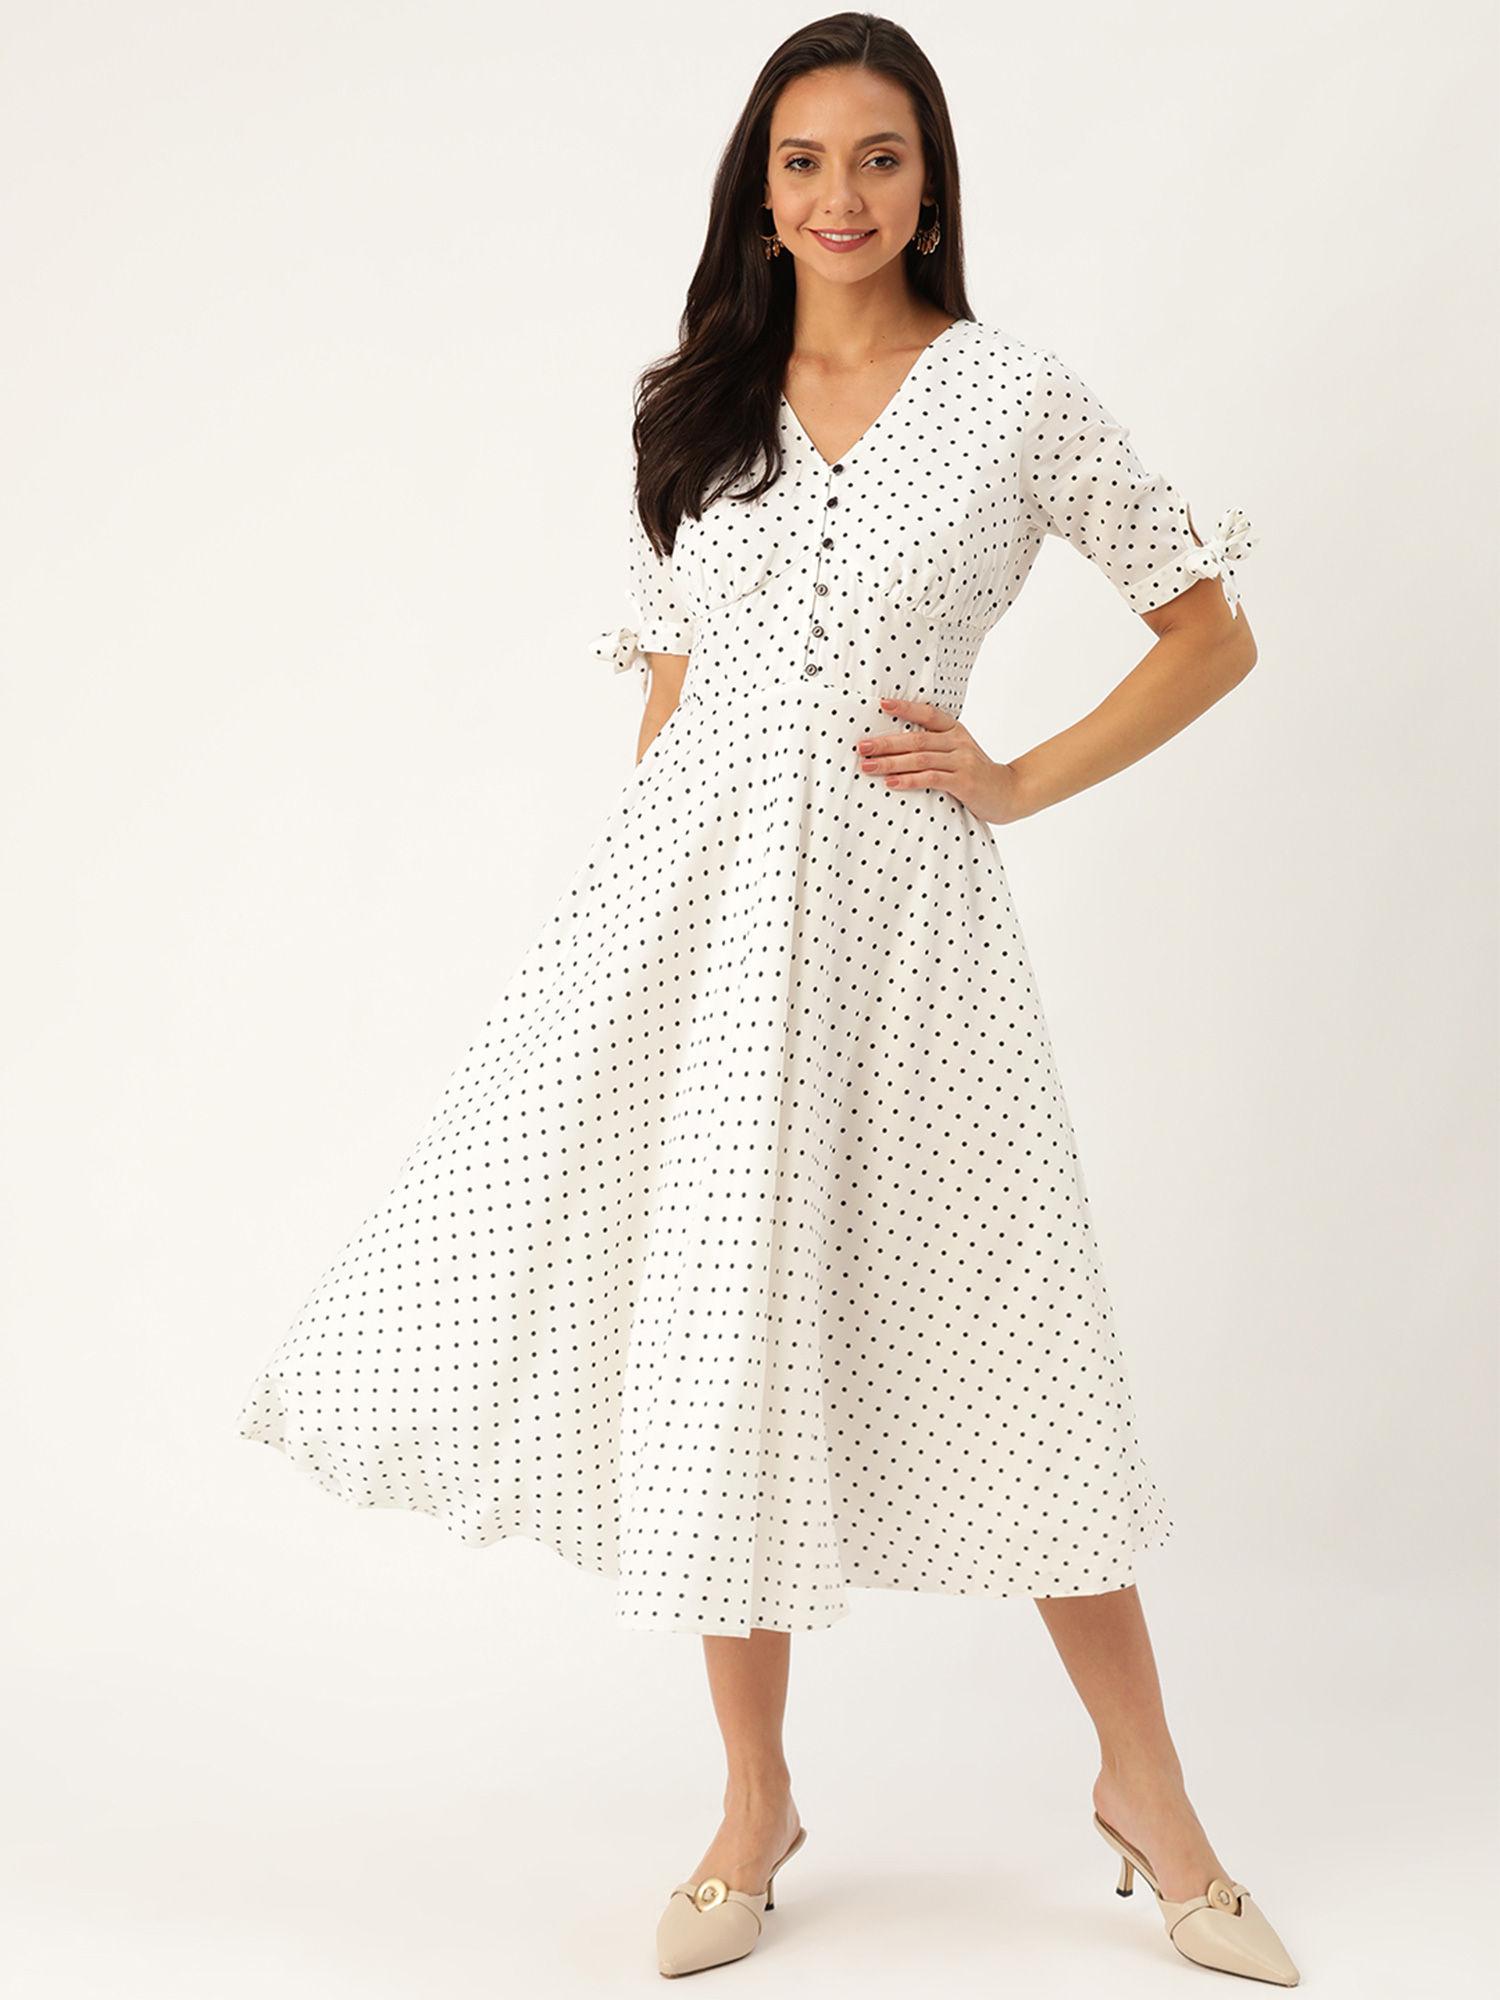 stunning in white polka dot dress